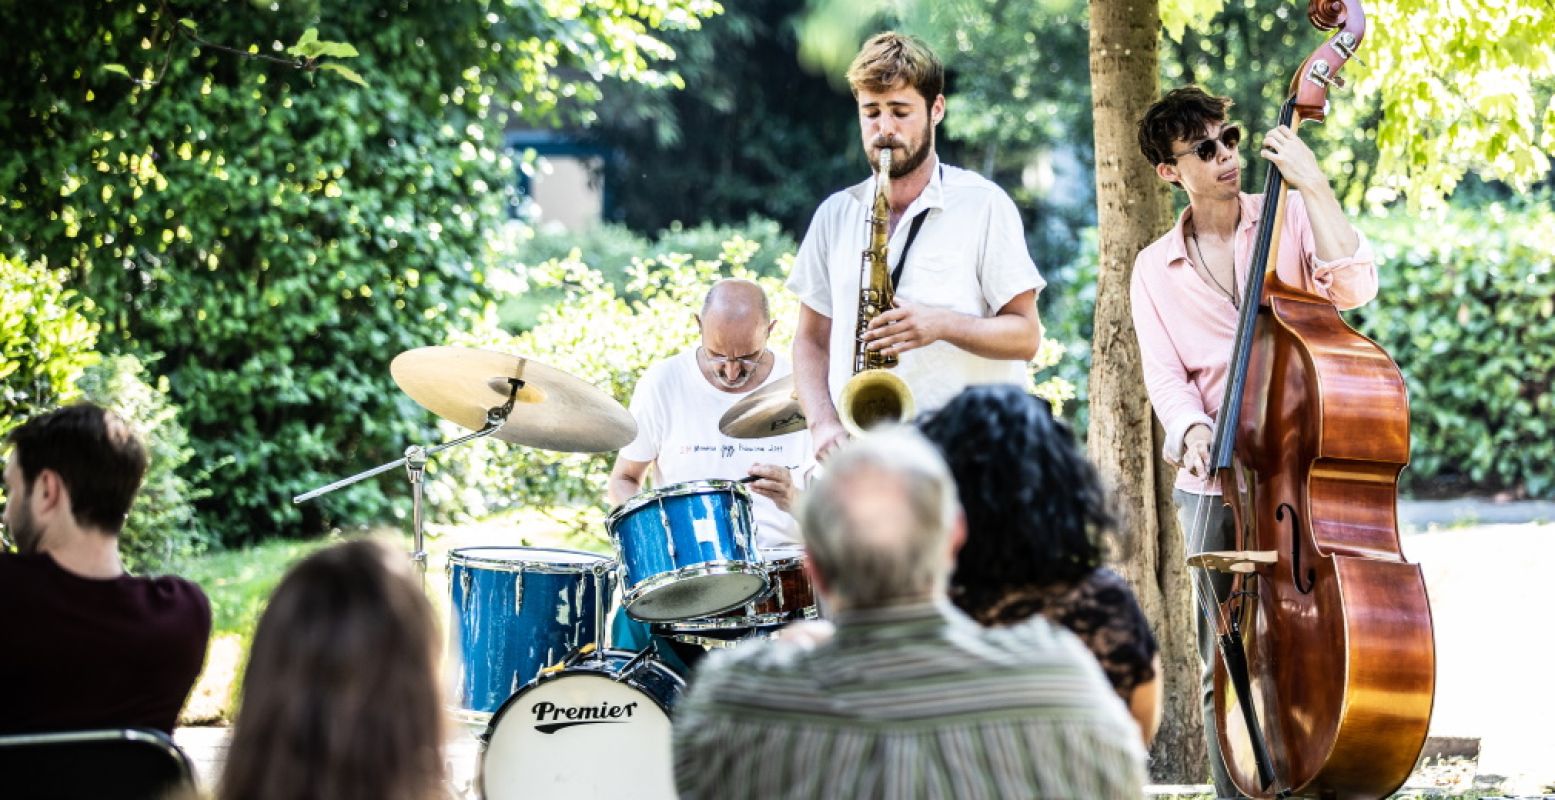 Het Grachtenfestival barst ook van de talentvolle jazzmuzikanten, zoals het Gideon Tazelaar Trio. Foto: Melle Meivogel